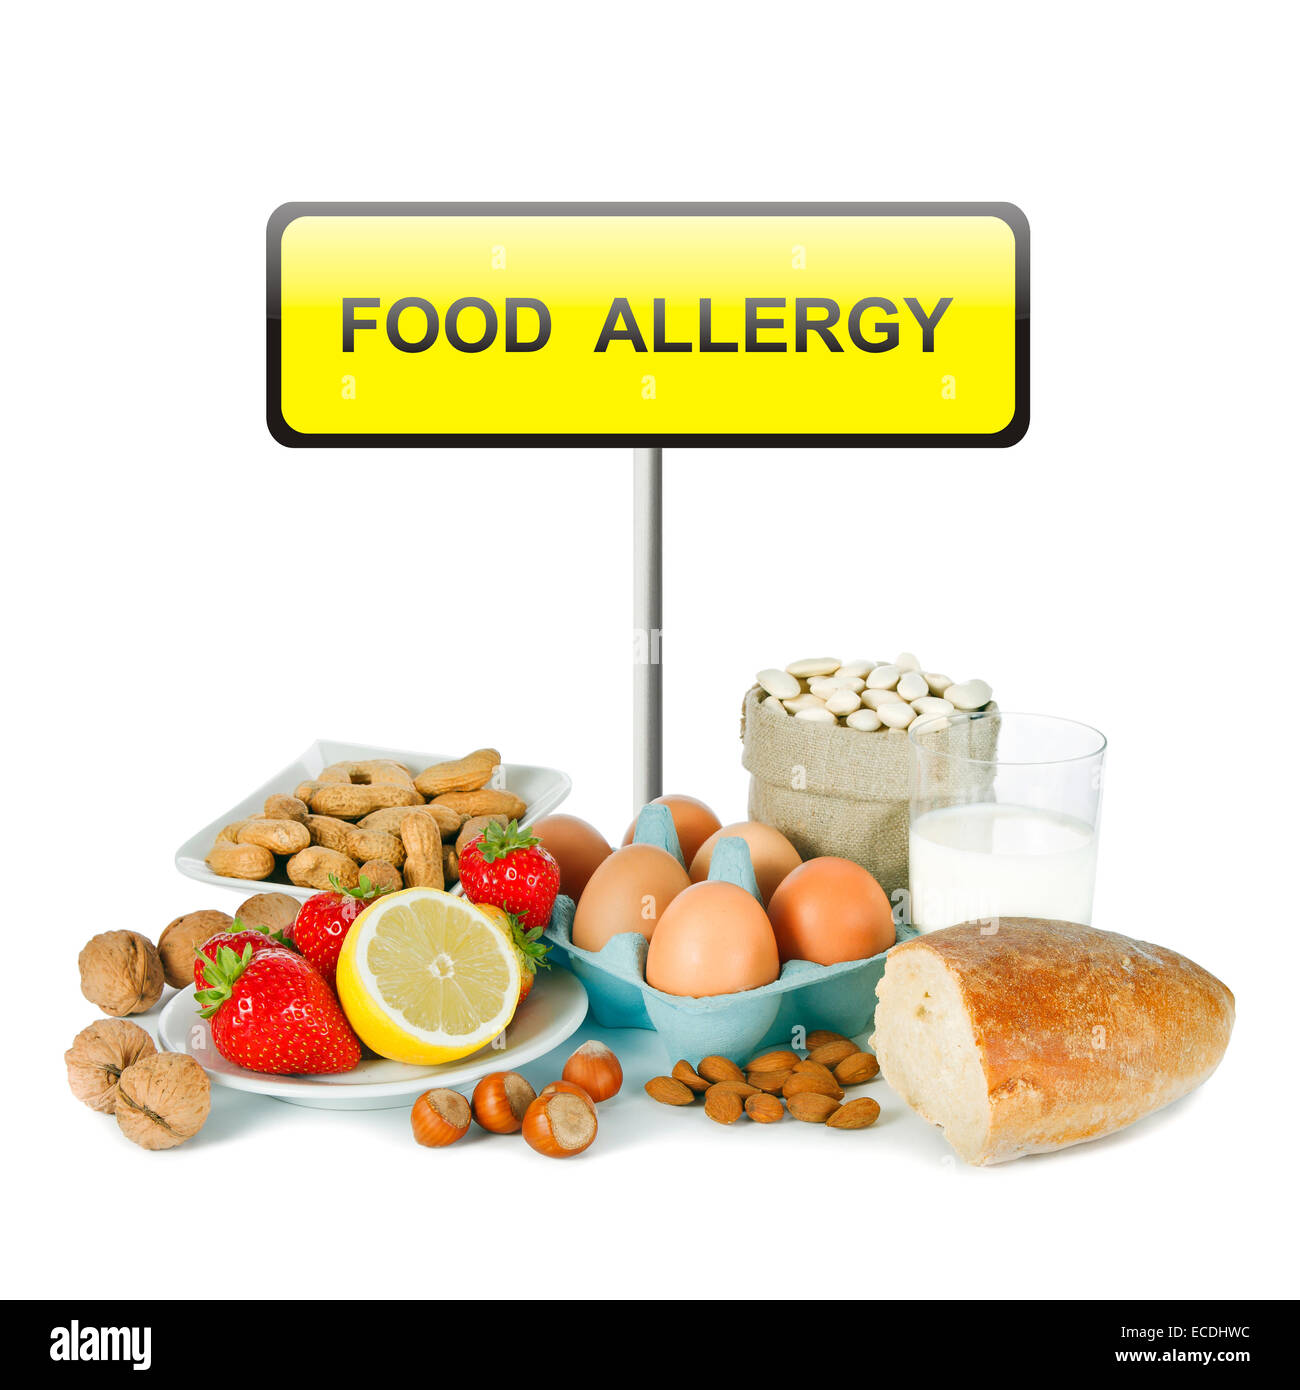 Allergia al concetto di cibo - pane, latte, frutta, uova e fagioli su sfondo bianco Foto Stock